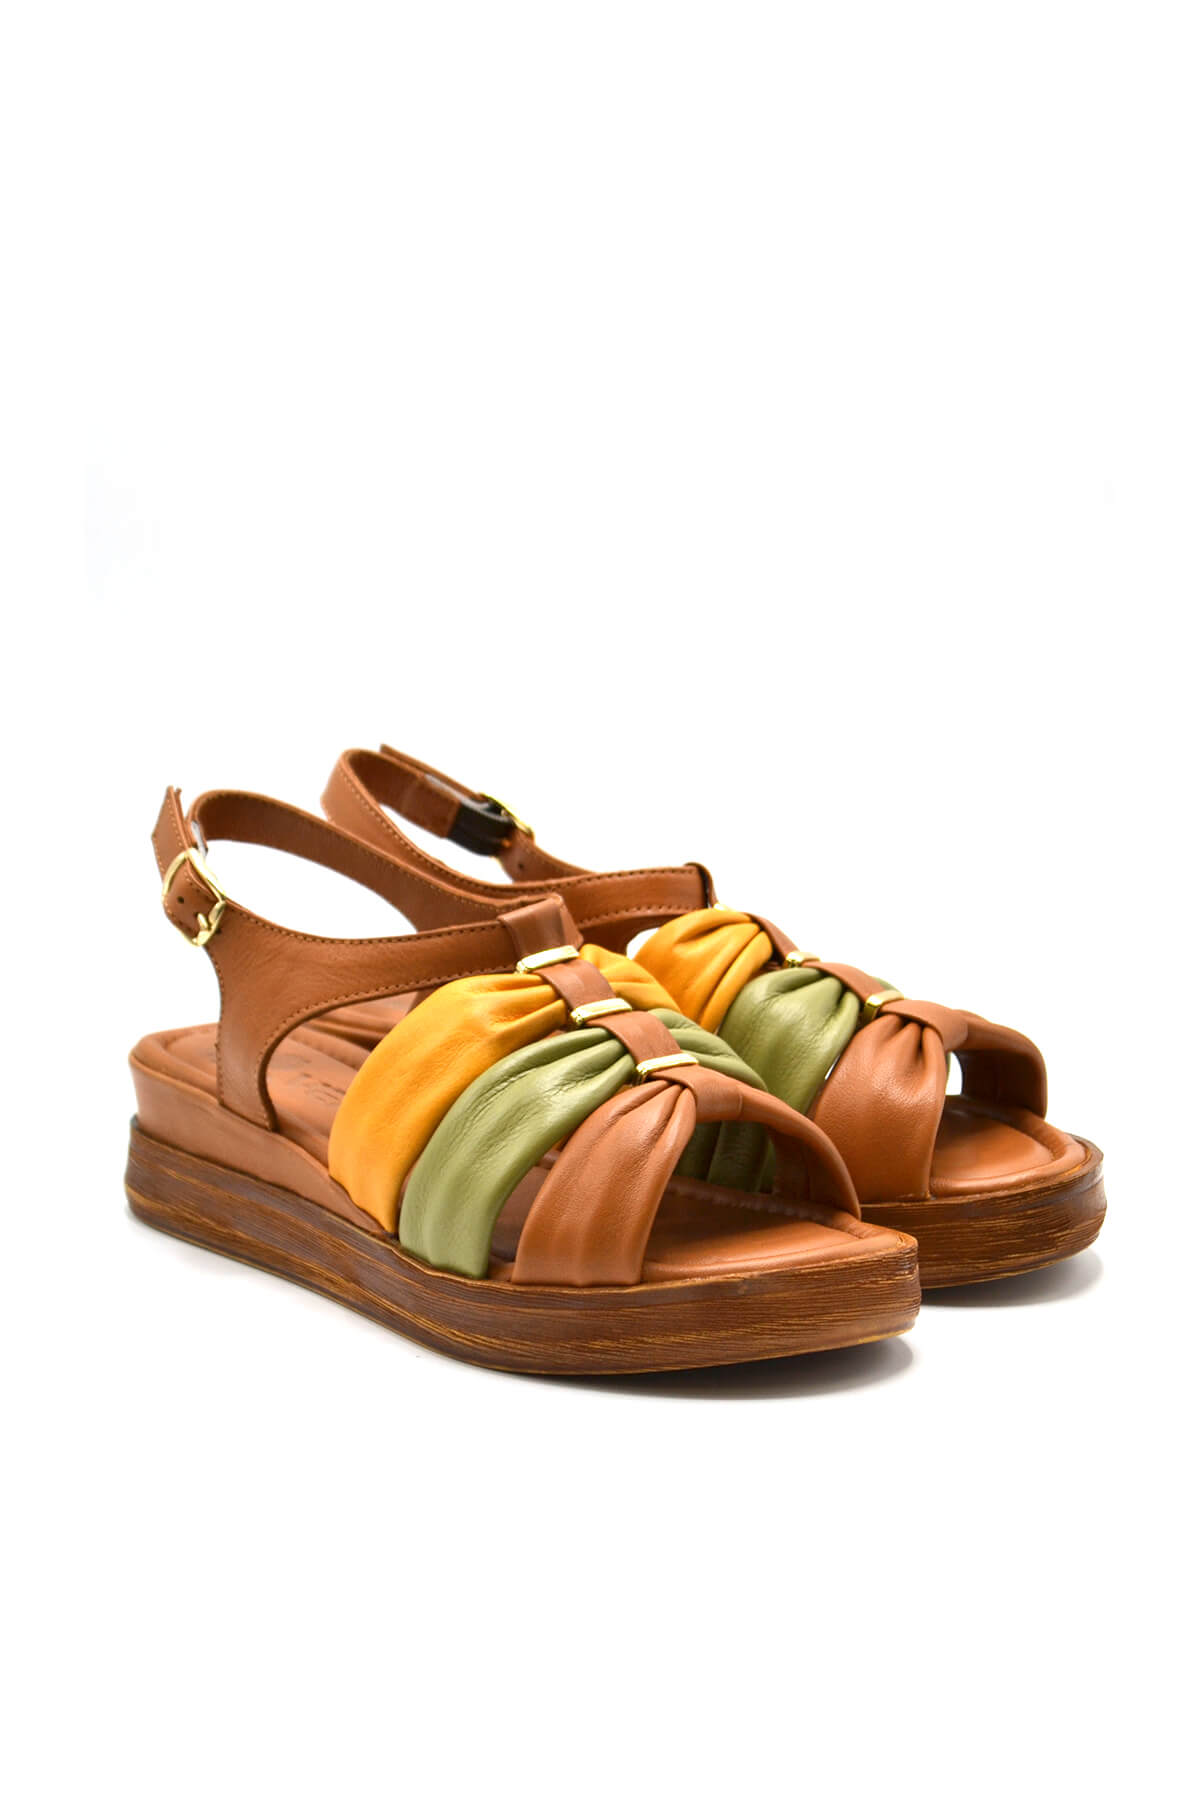 Kadın Comfort Deri Sandalet Taba 2216412Y